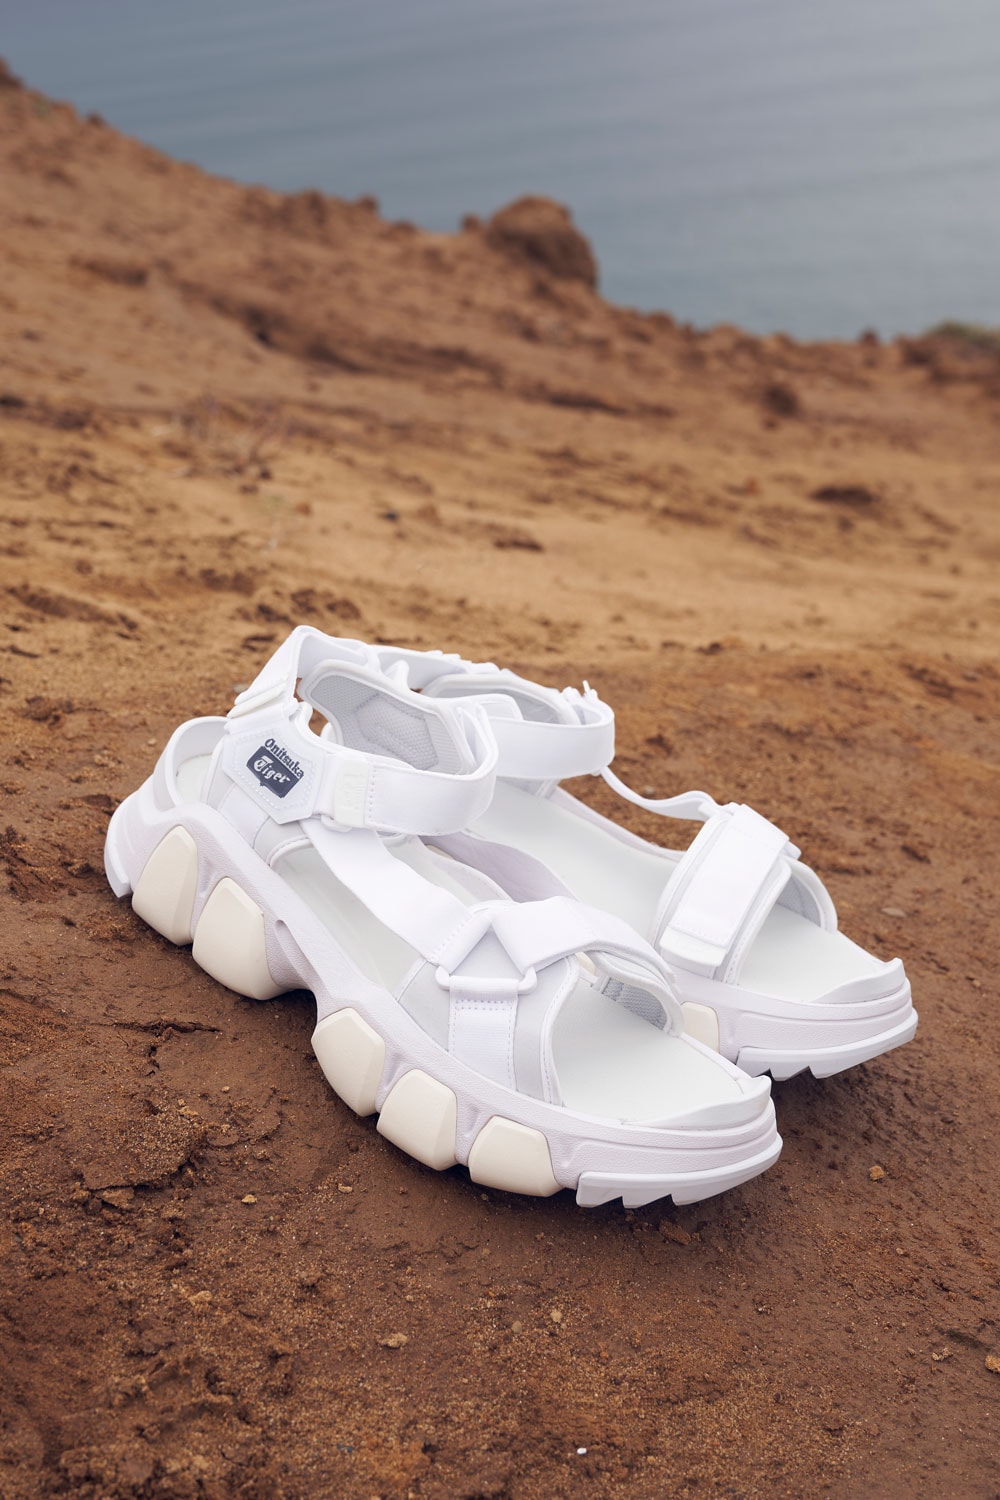 dentigre strap sandals onitsuka tiger footwear release